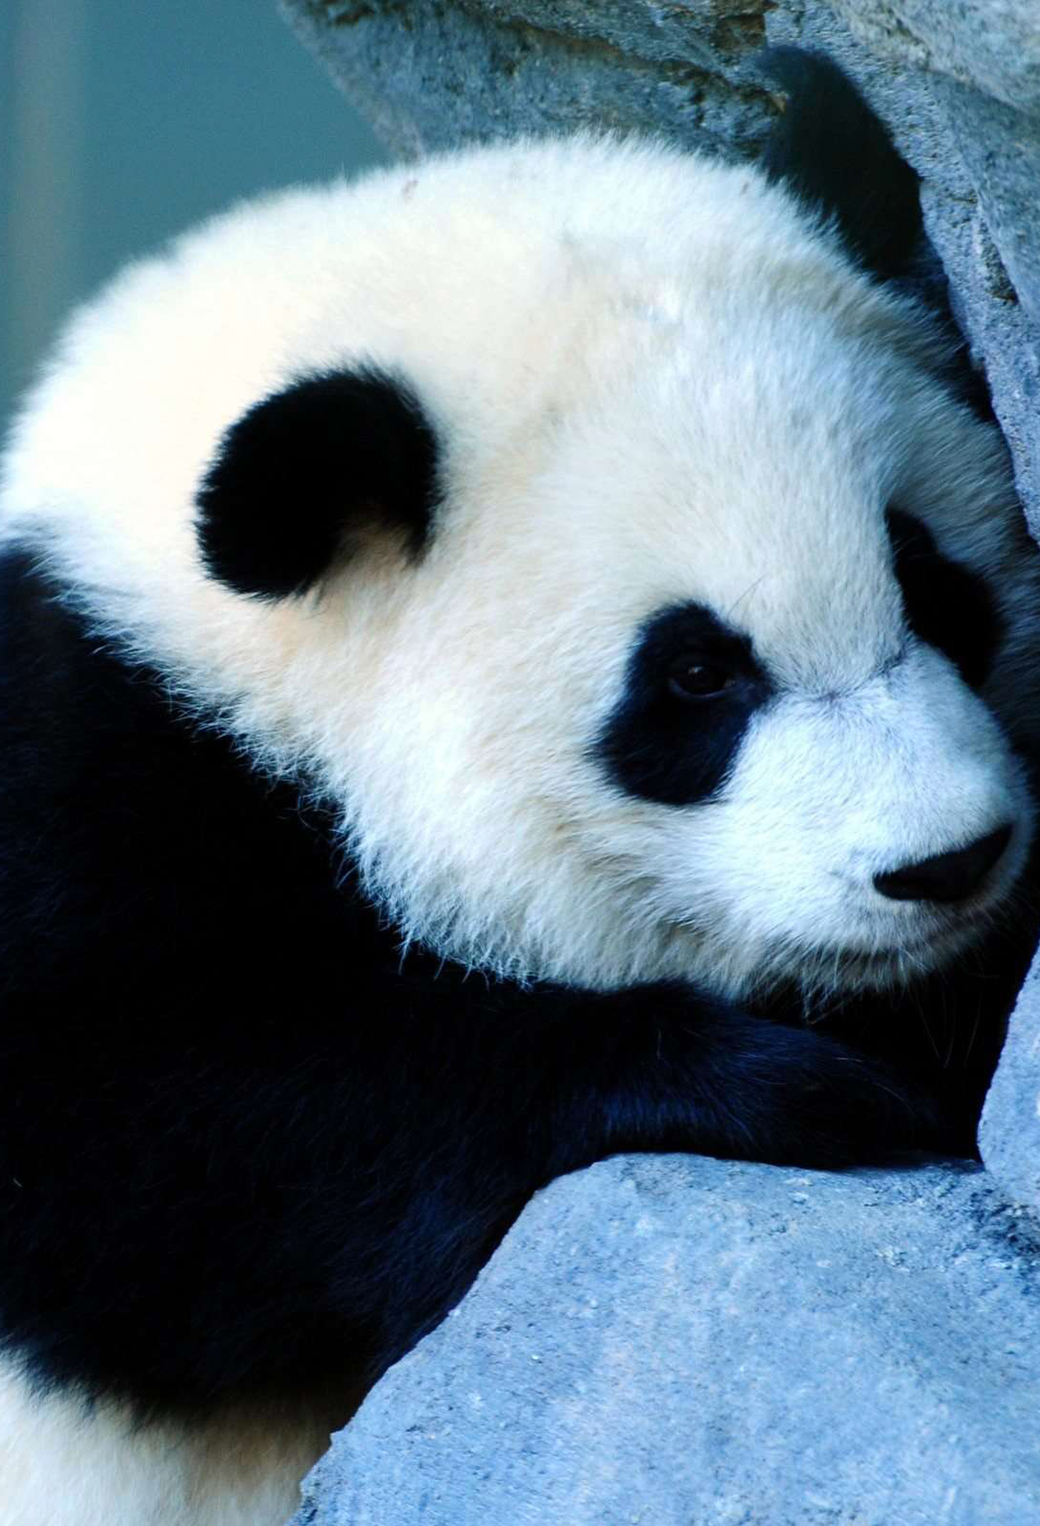 Kawaii Panda iPhone Wallpaper - WallpaperSafari